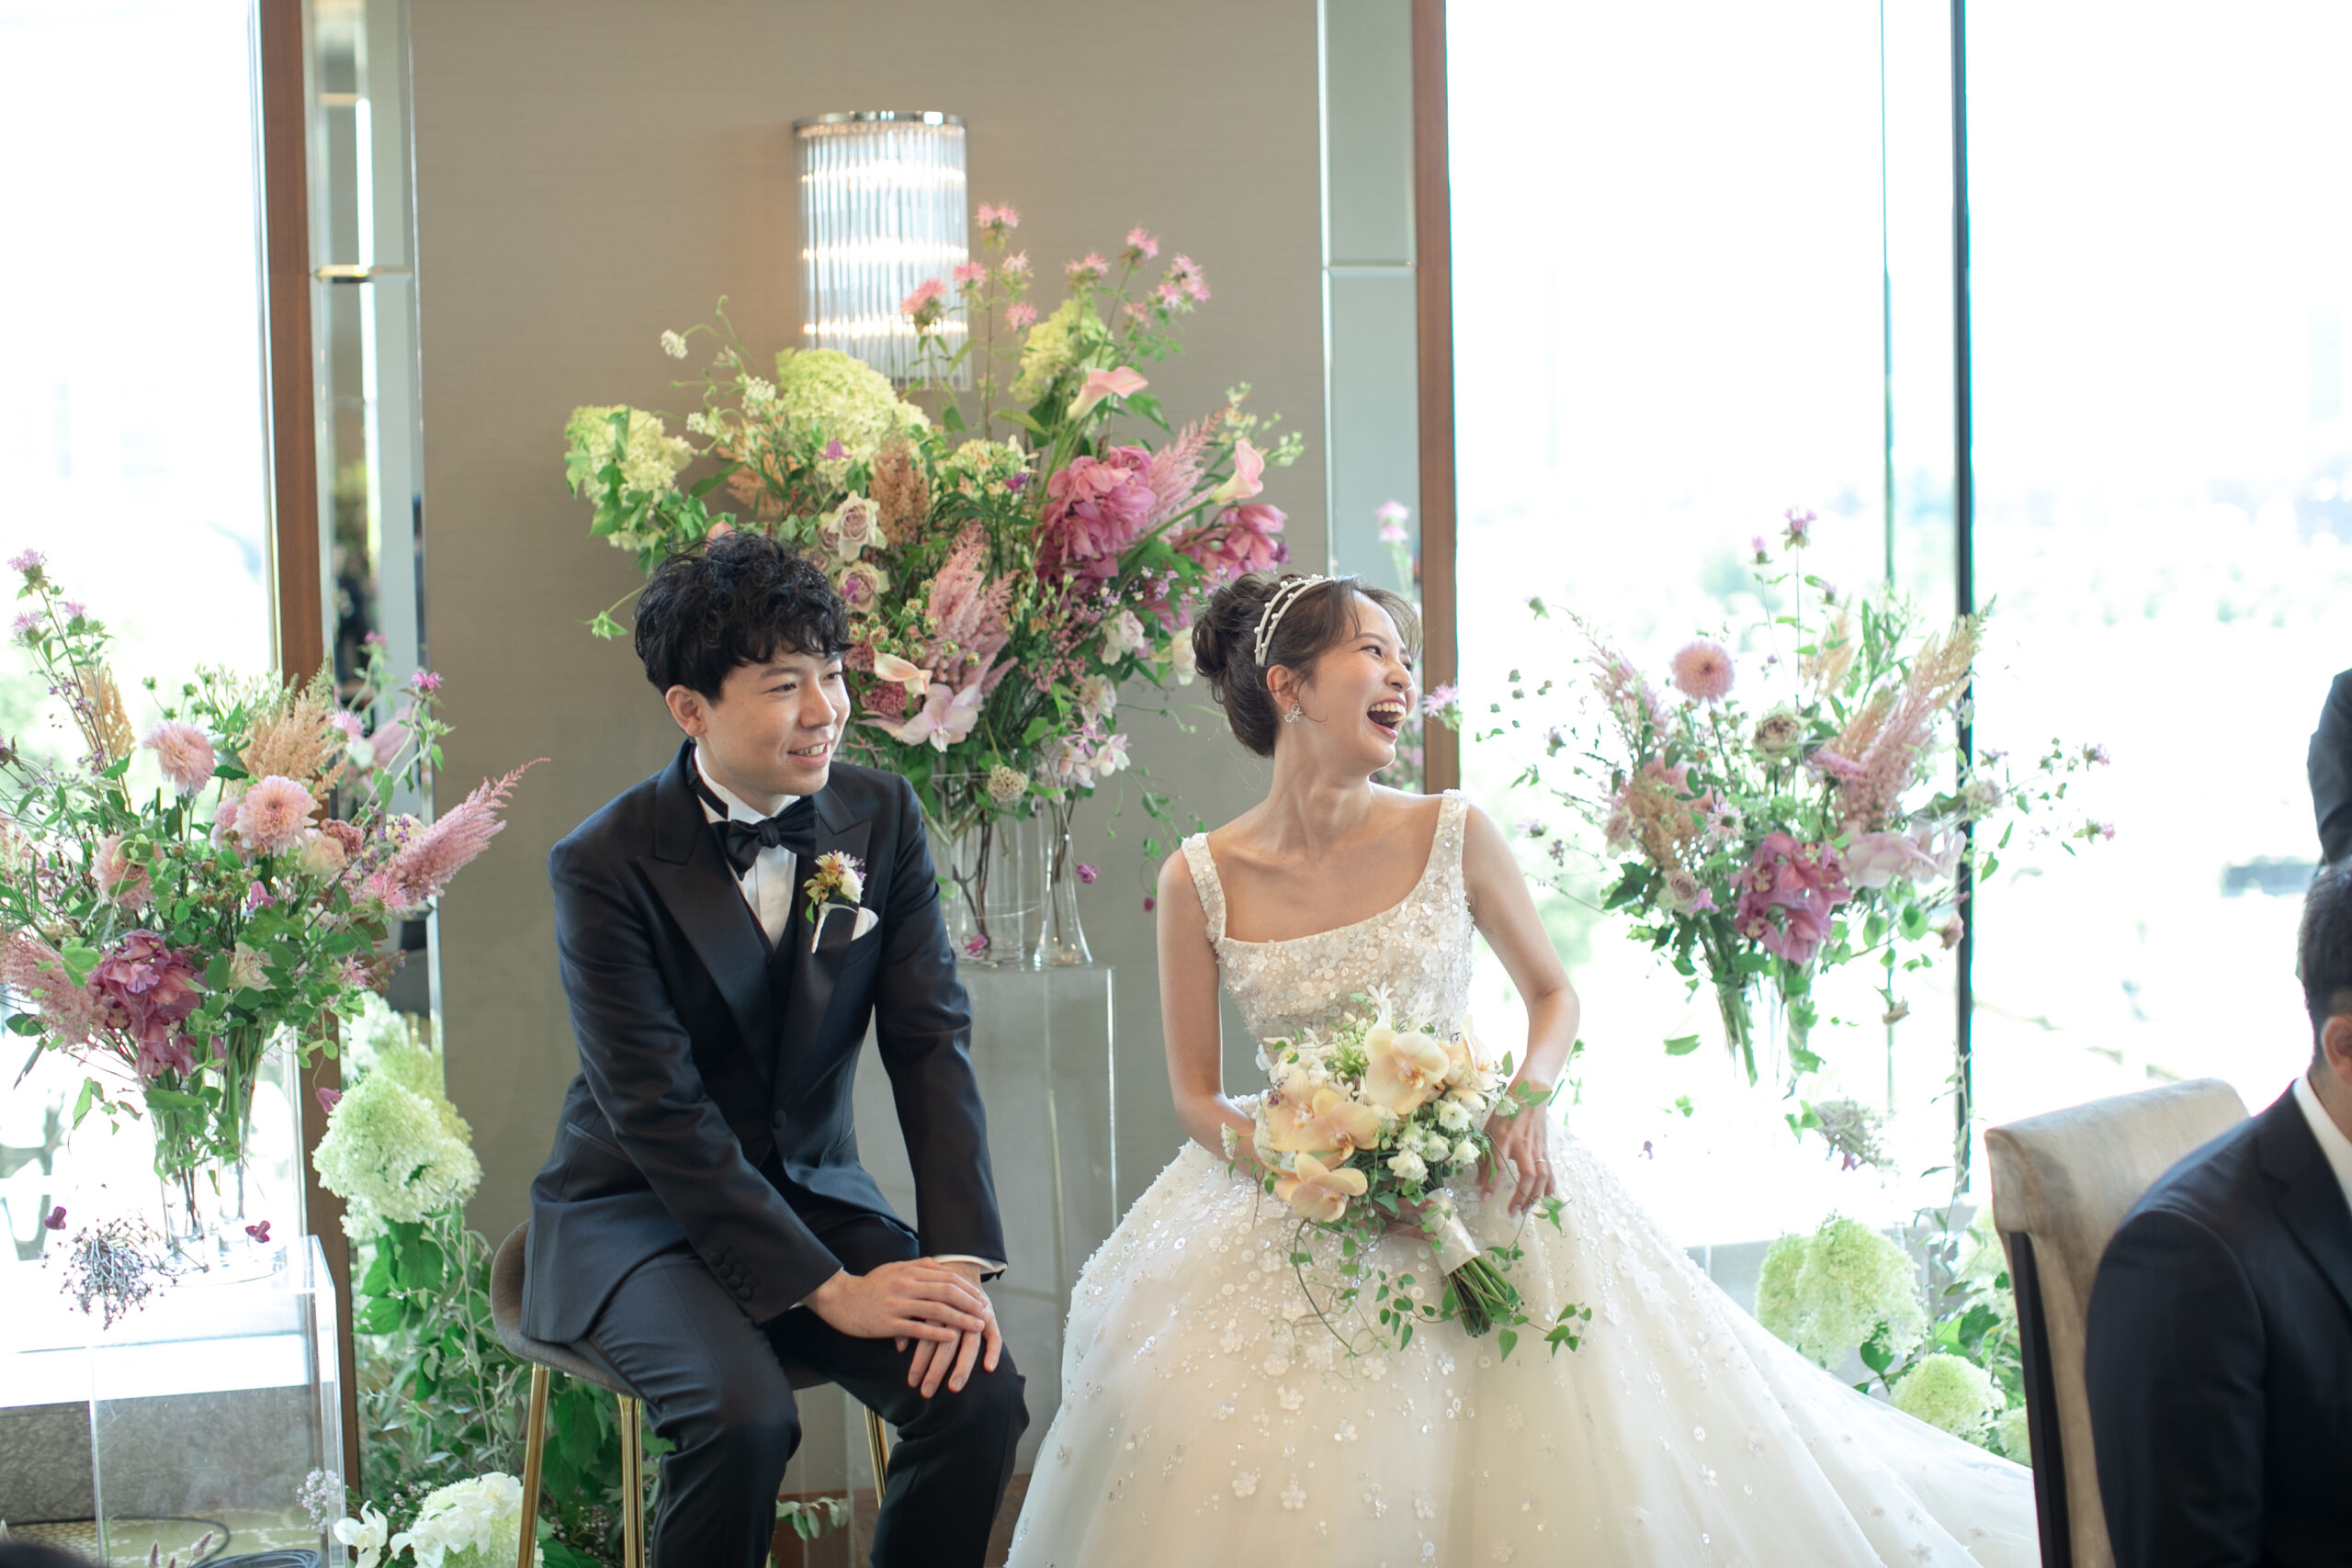 ザトリートドレッシング提携会場のパレスホテル東京で叶えるラグジュアリーな結婚式におすすめのELIE SAAB BRIDE(エリー サーブ ブライド)の最新のスタイリングのご紹介